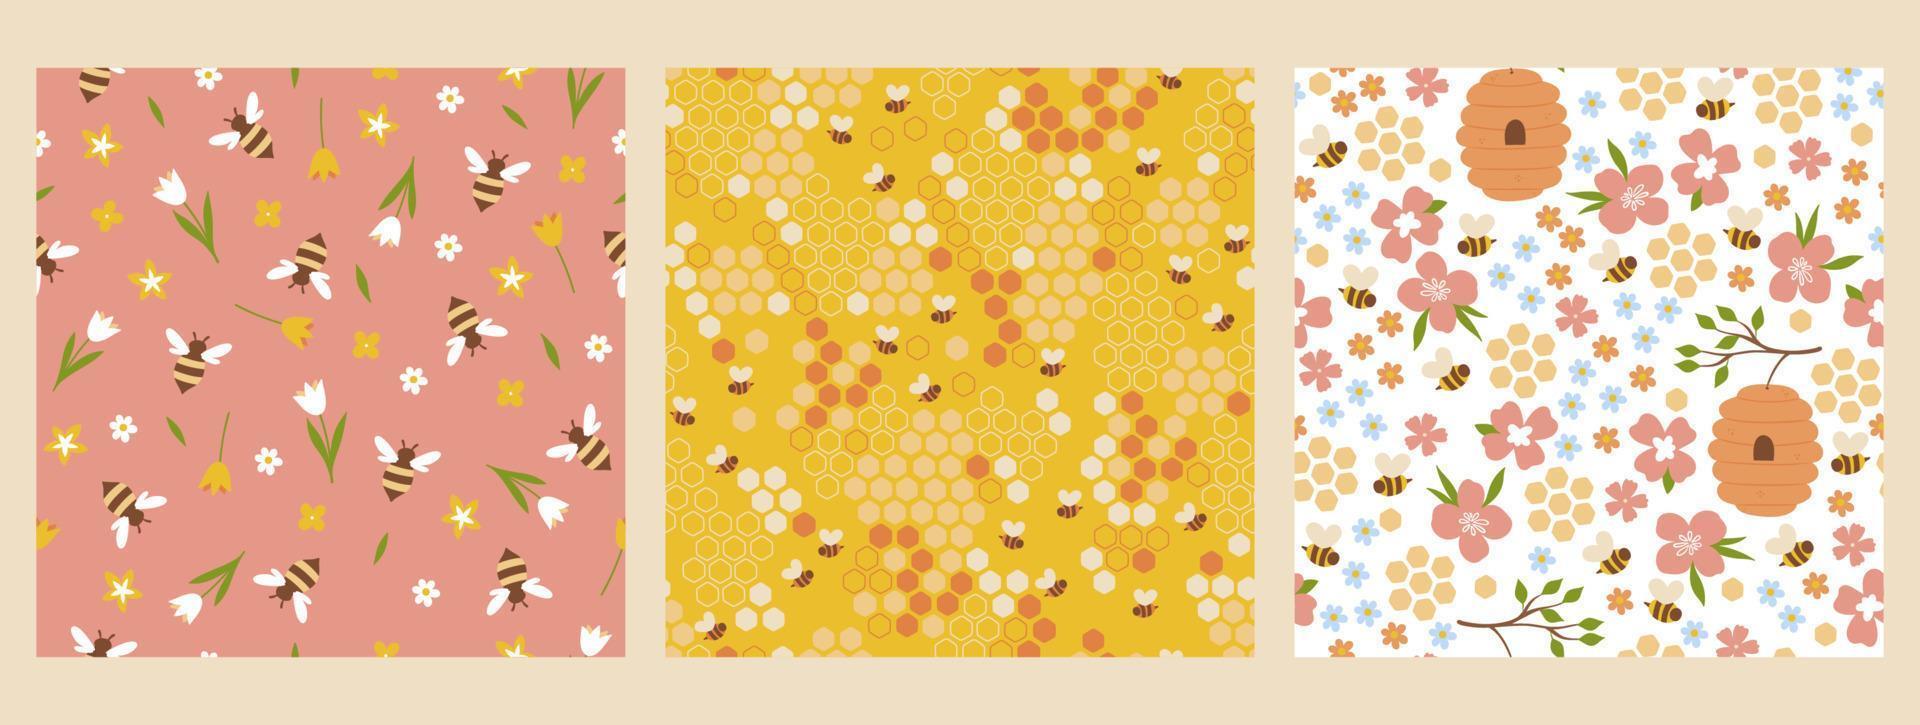 conjunto do desatado padrões com abelhas e flores vetor gráficos.